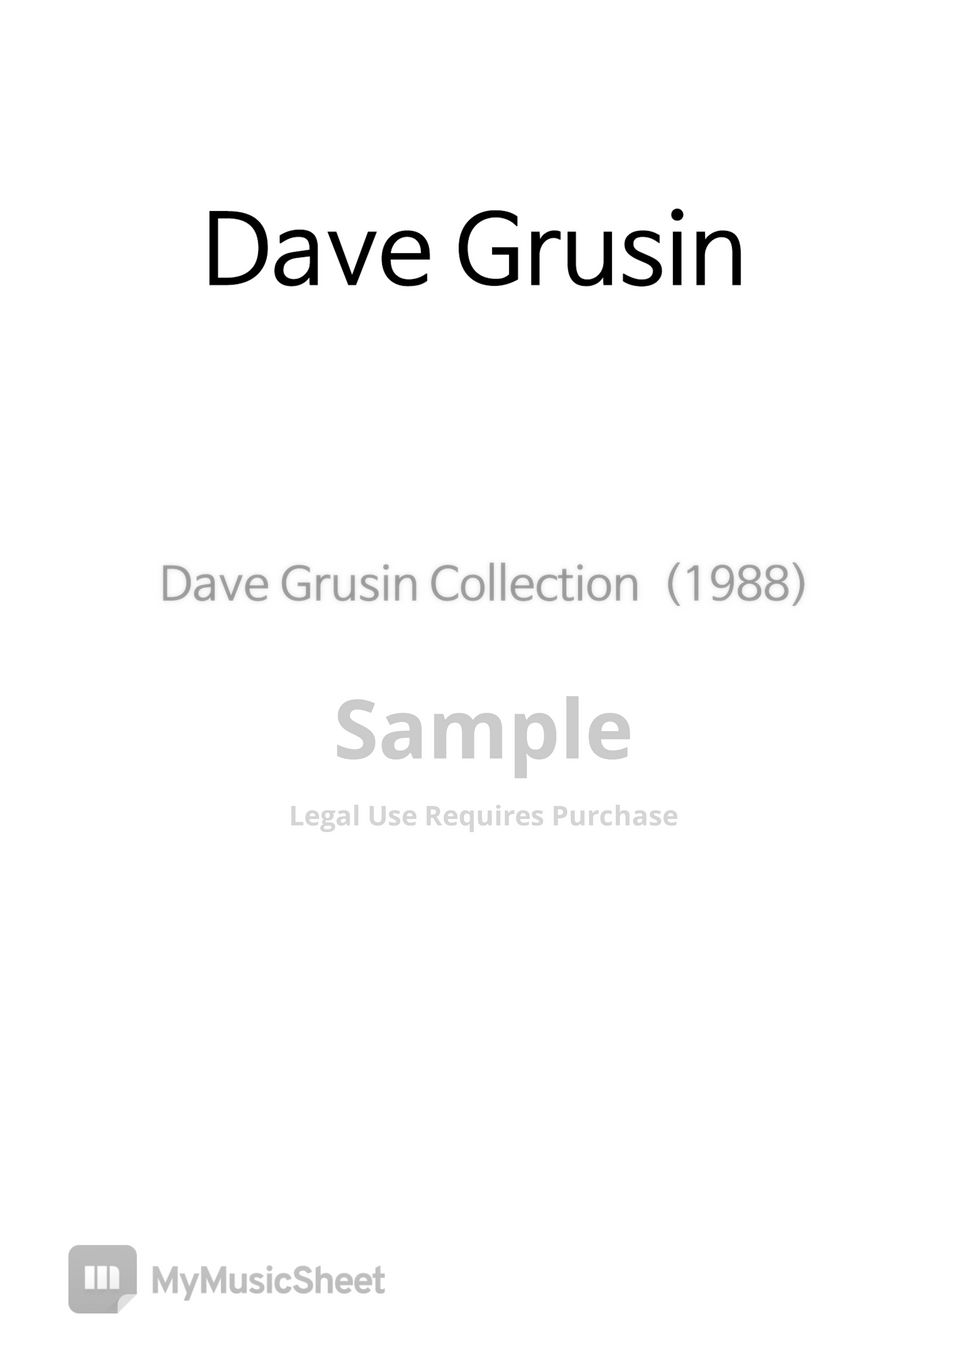 Dave Grusin Collection - Dave Grusin Collection by COPYDRUM